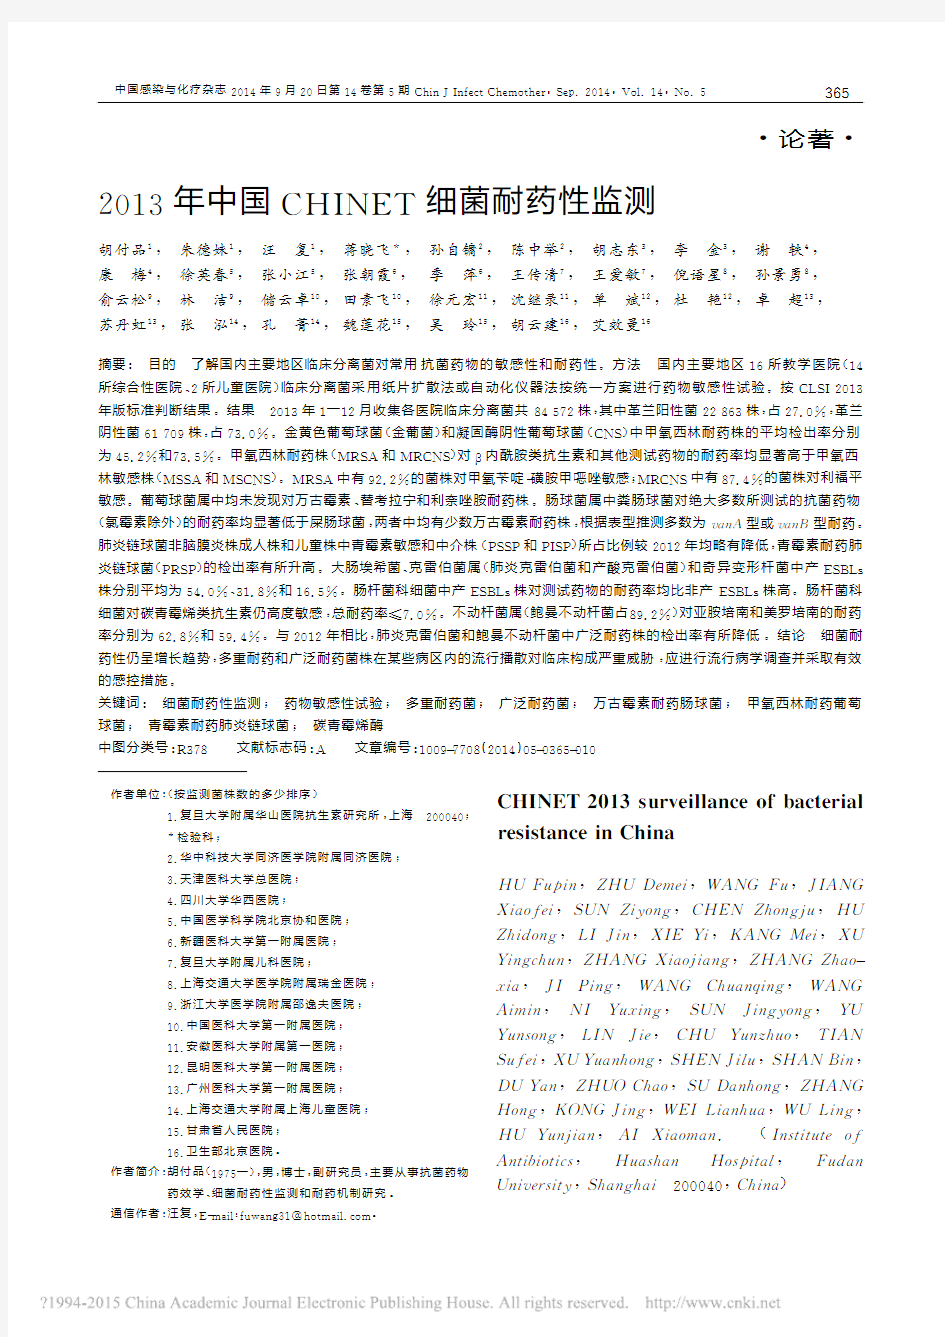 2013年中国CHINET细菌耐药性监测_胡付品